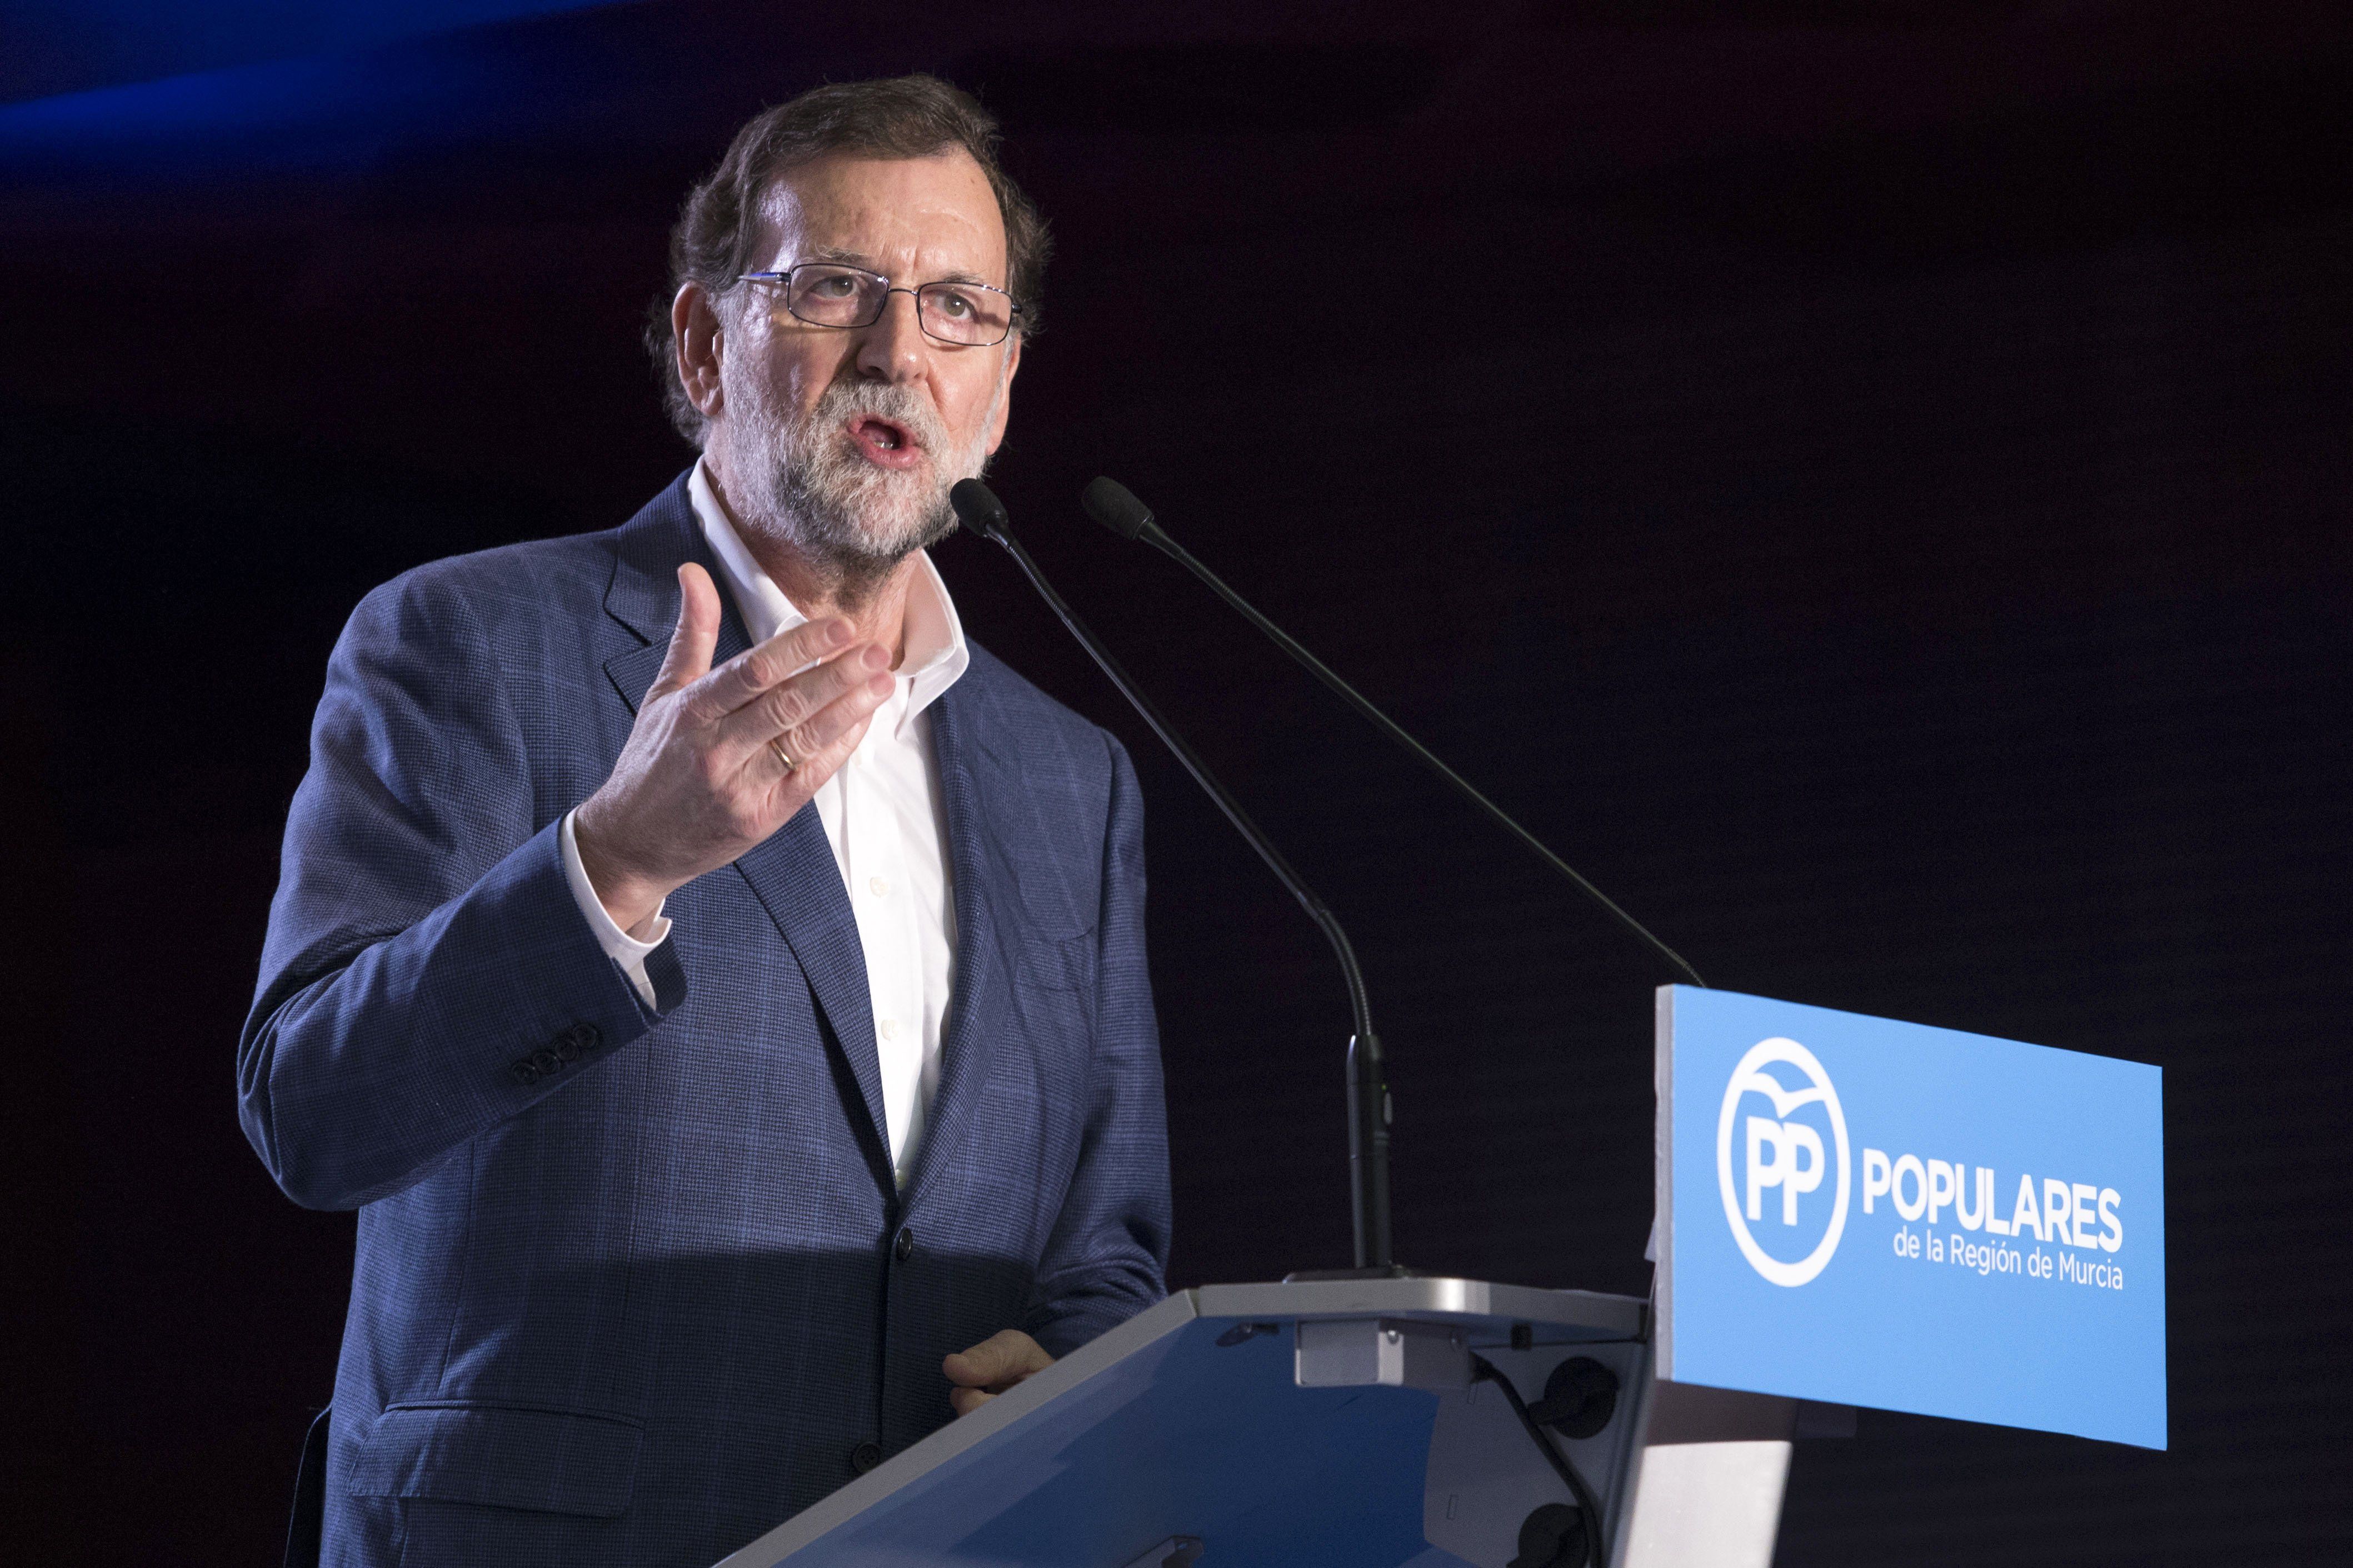 Aguirre posa Rajoy contra les cordes